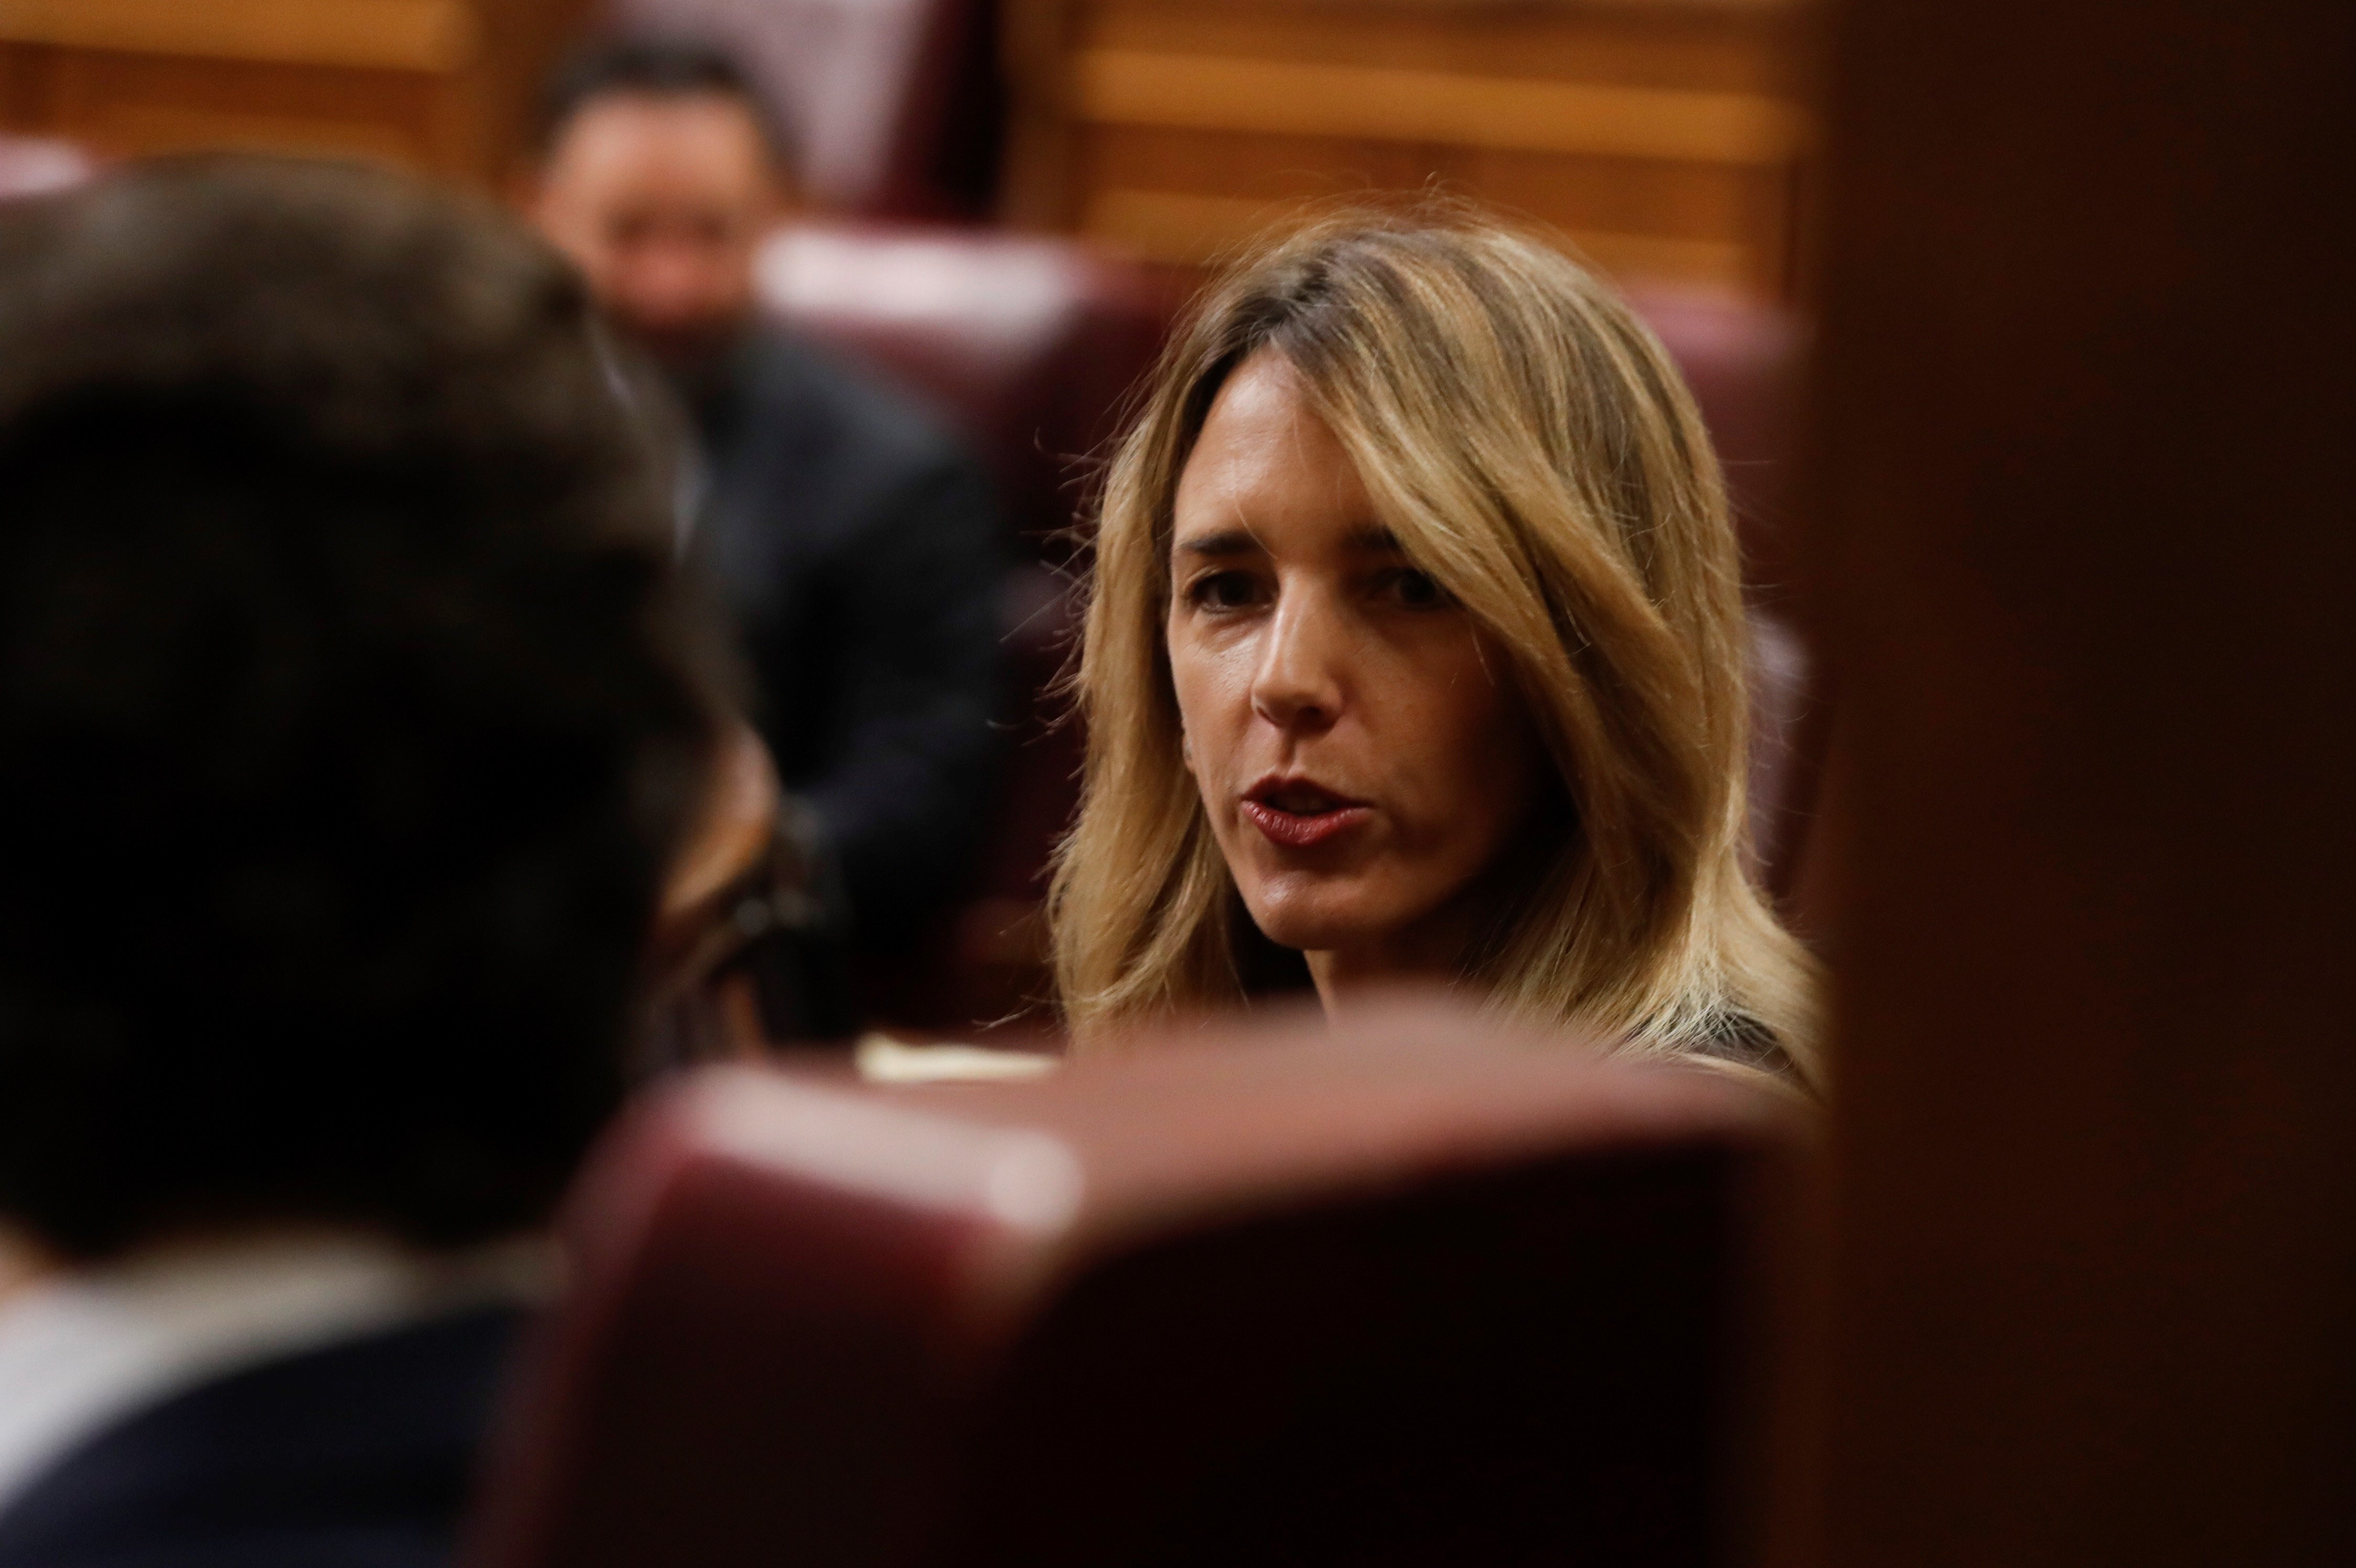 Un diputat destrossa Cayetana Álvarez de Toledo en 2 paraules. Ovació a la xarxa